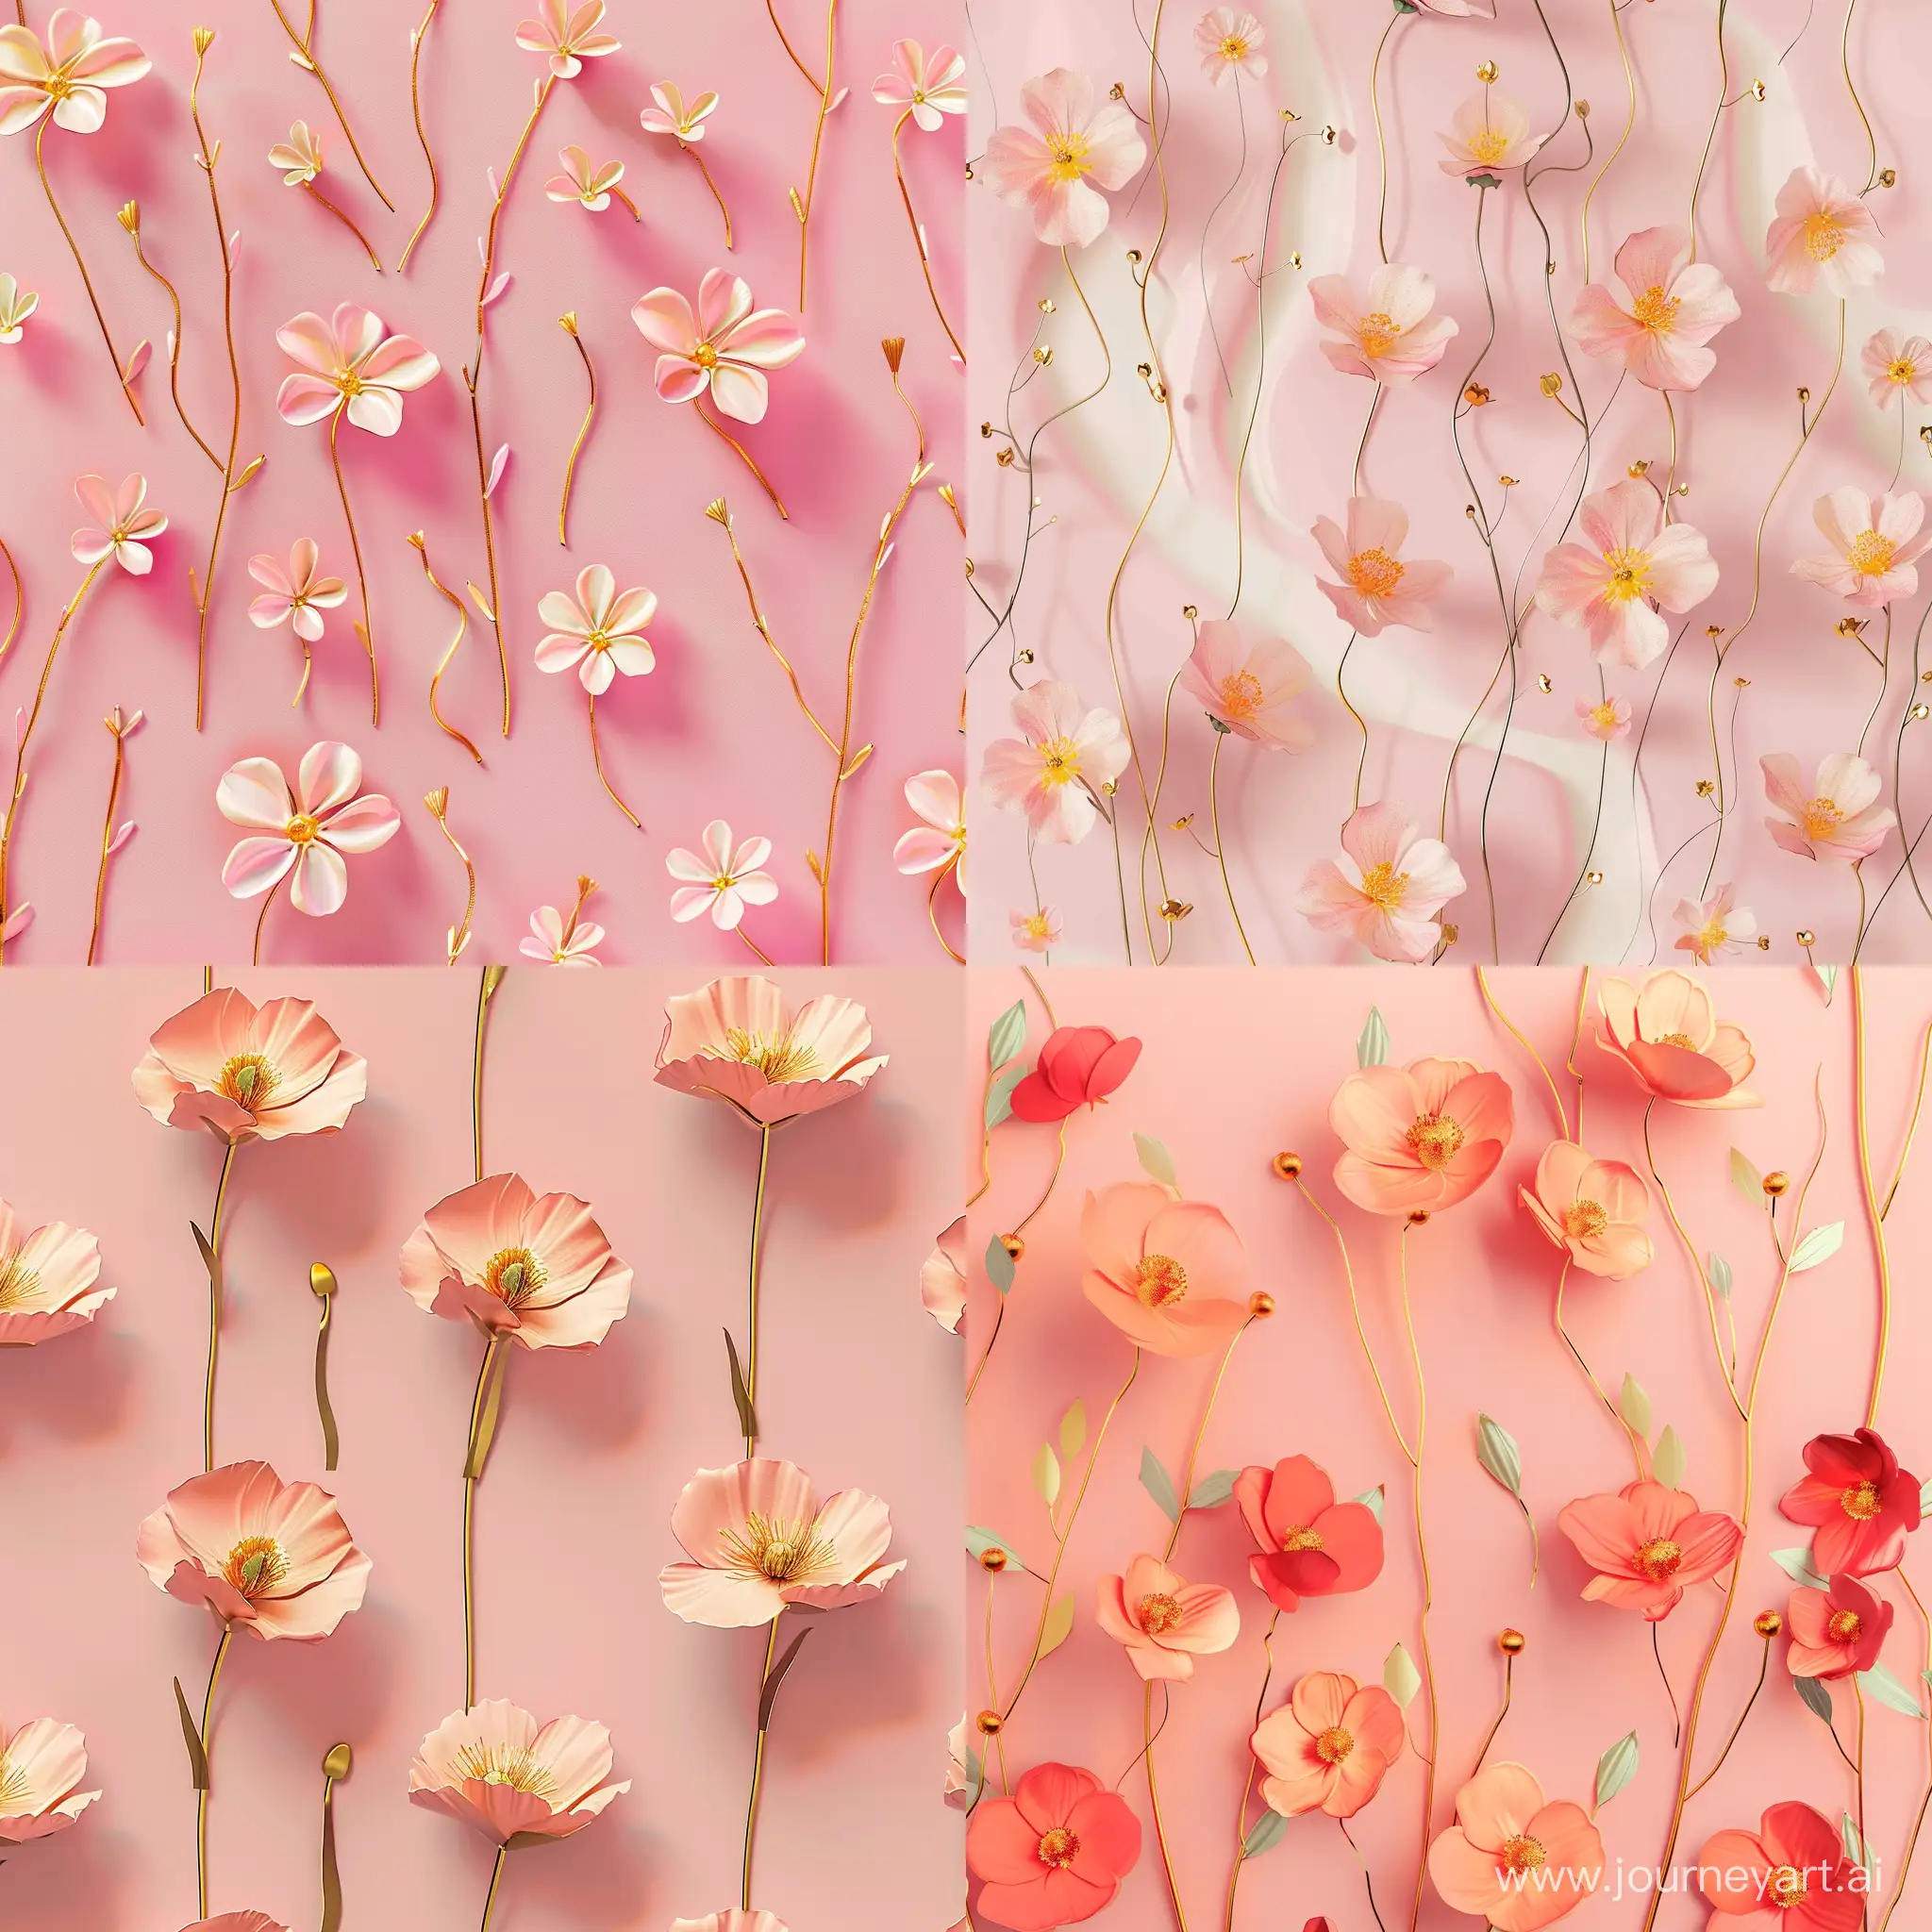 Golden-Stemmed-Pattern-Flowers-on-Pink-Background